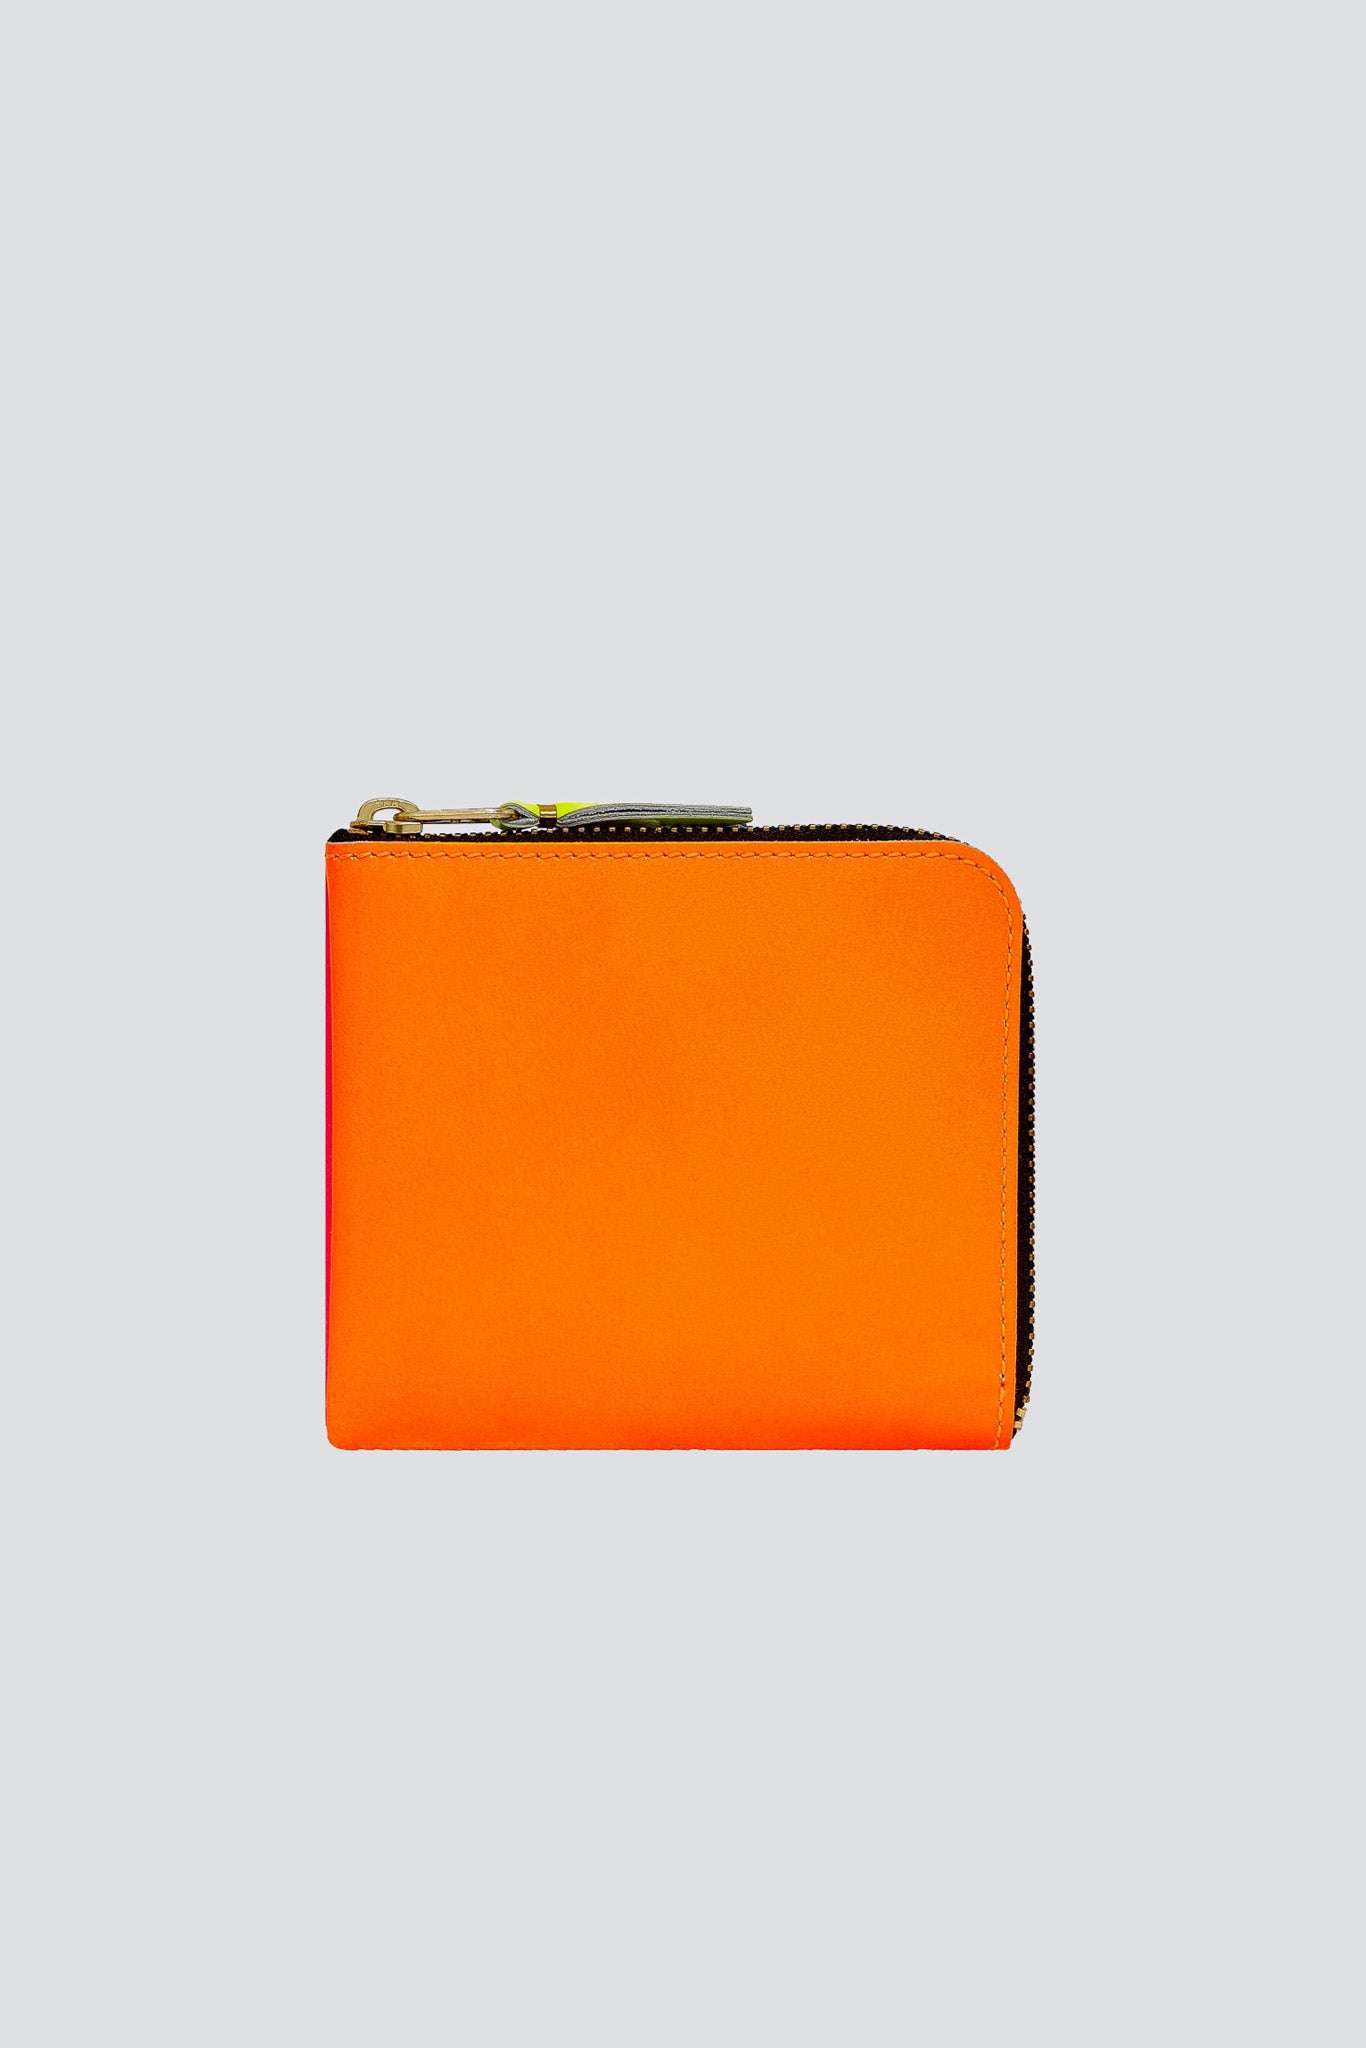 Super Fluo Half Zip Wallet - Orange/Pink - SA3100SF